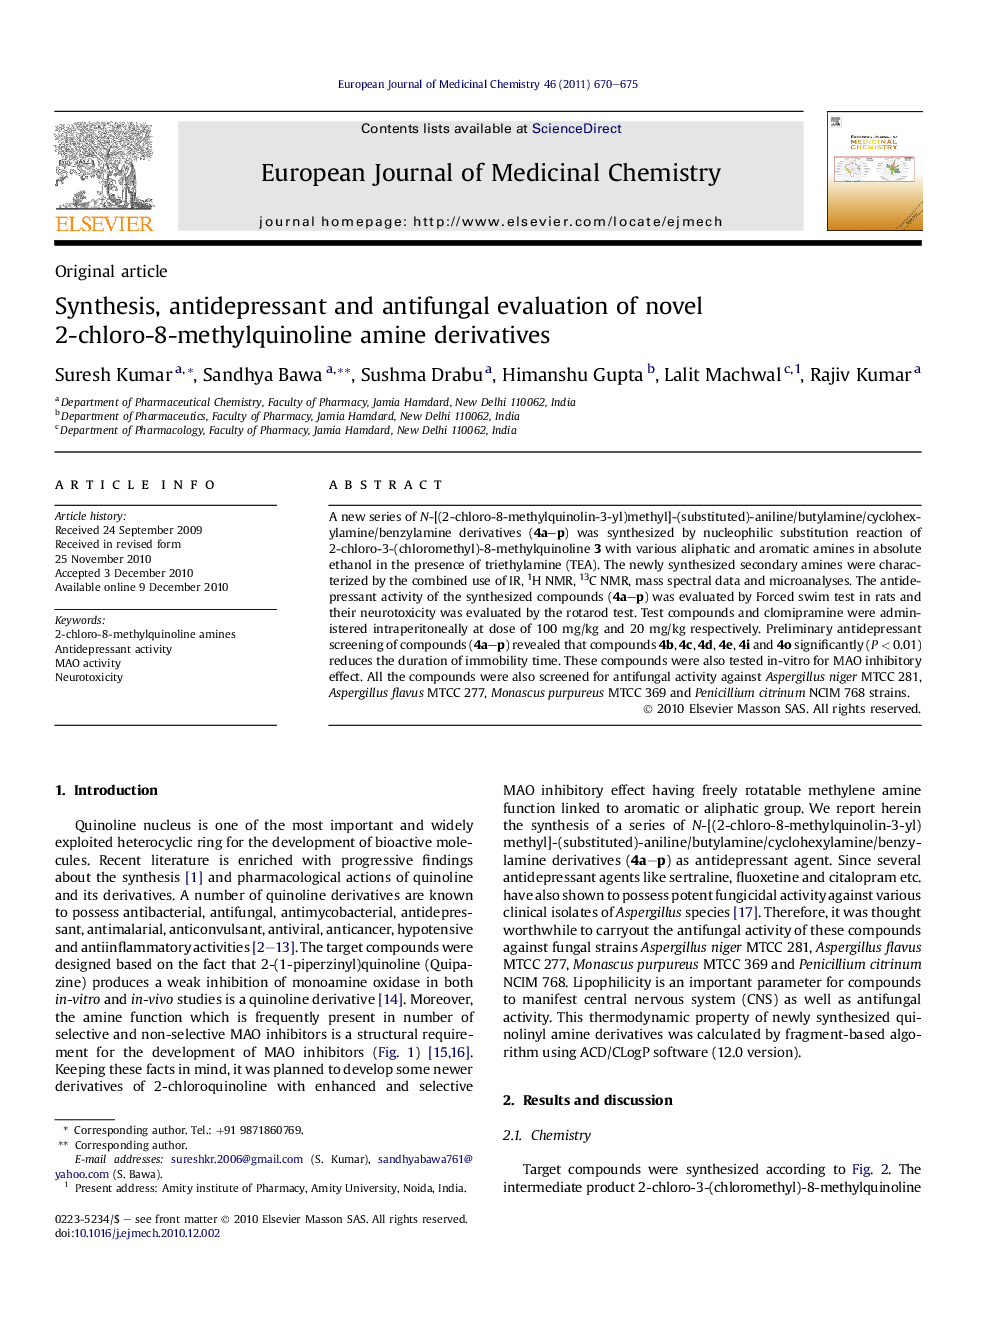 Synthesis, antidepressant and antifungal evaluation of novel 2-chloro-8-methylquinoline amine derivatives